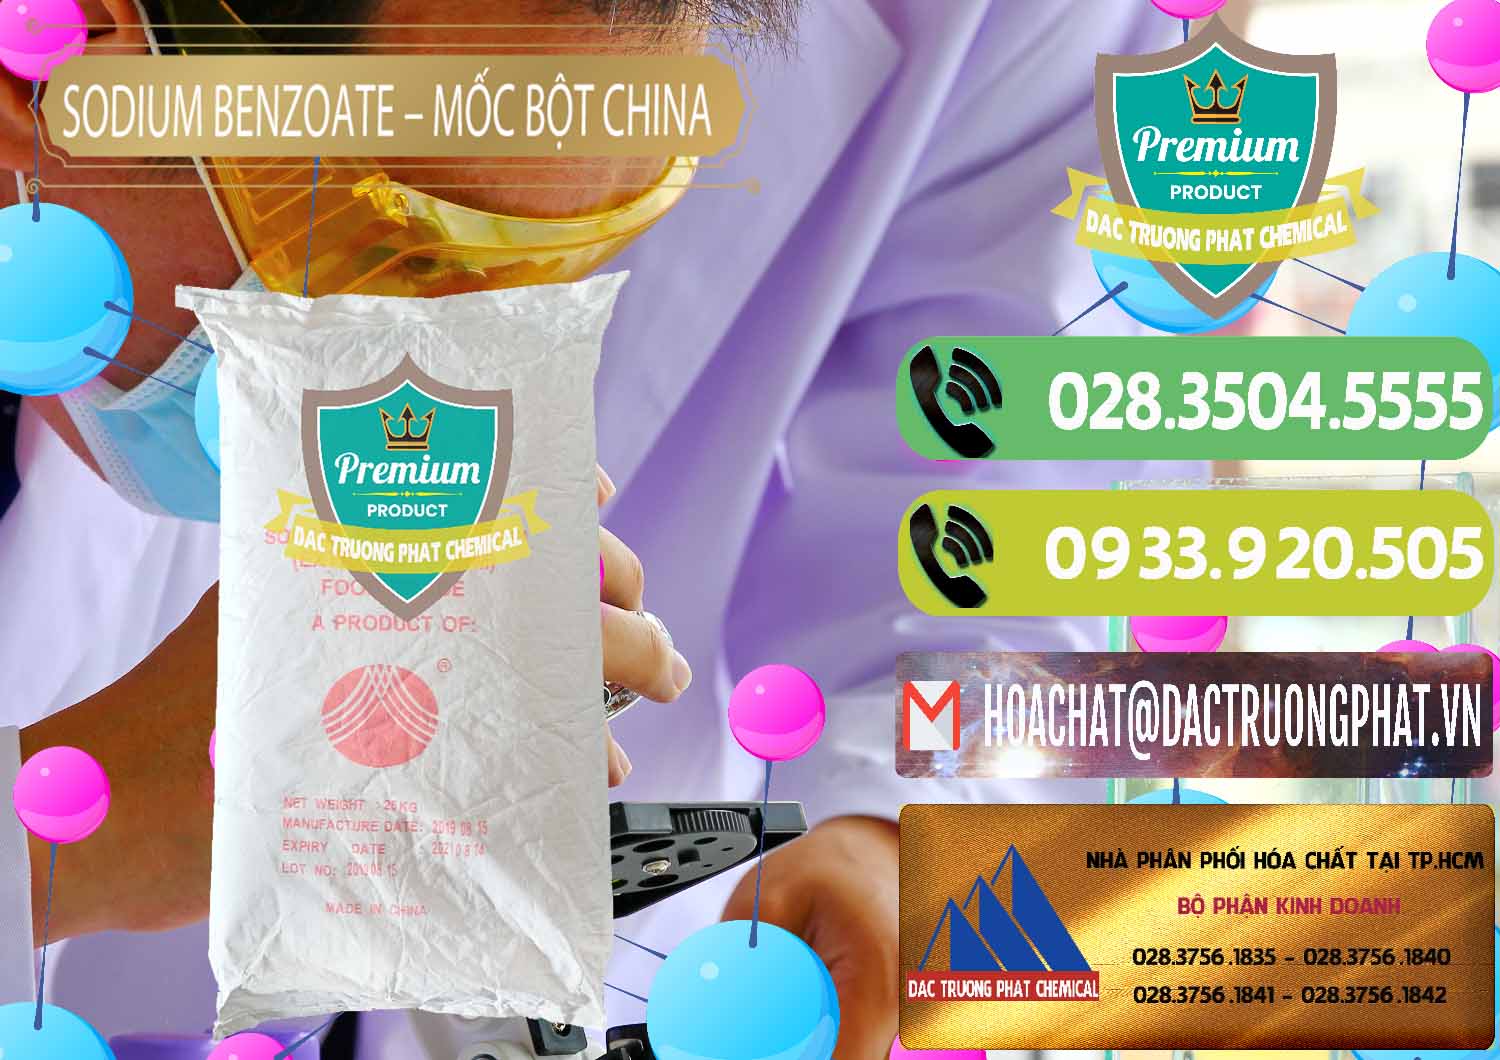 Công ty bán và cung cấp Sodium Benzoate - Mốc Bột Chữ Cam Food Grade Trung Quốc China - 0135 - Nơi phân phối & cung cấp hóa chất tại TP.HCM - hoachatmientay.vn